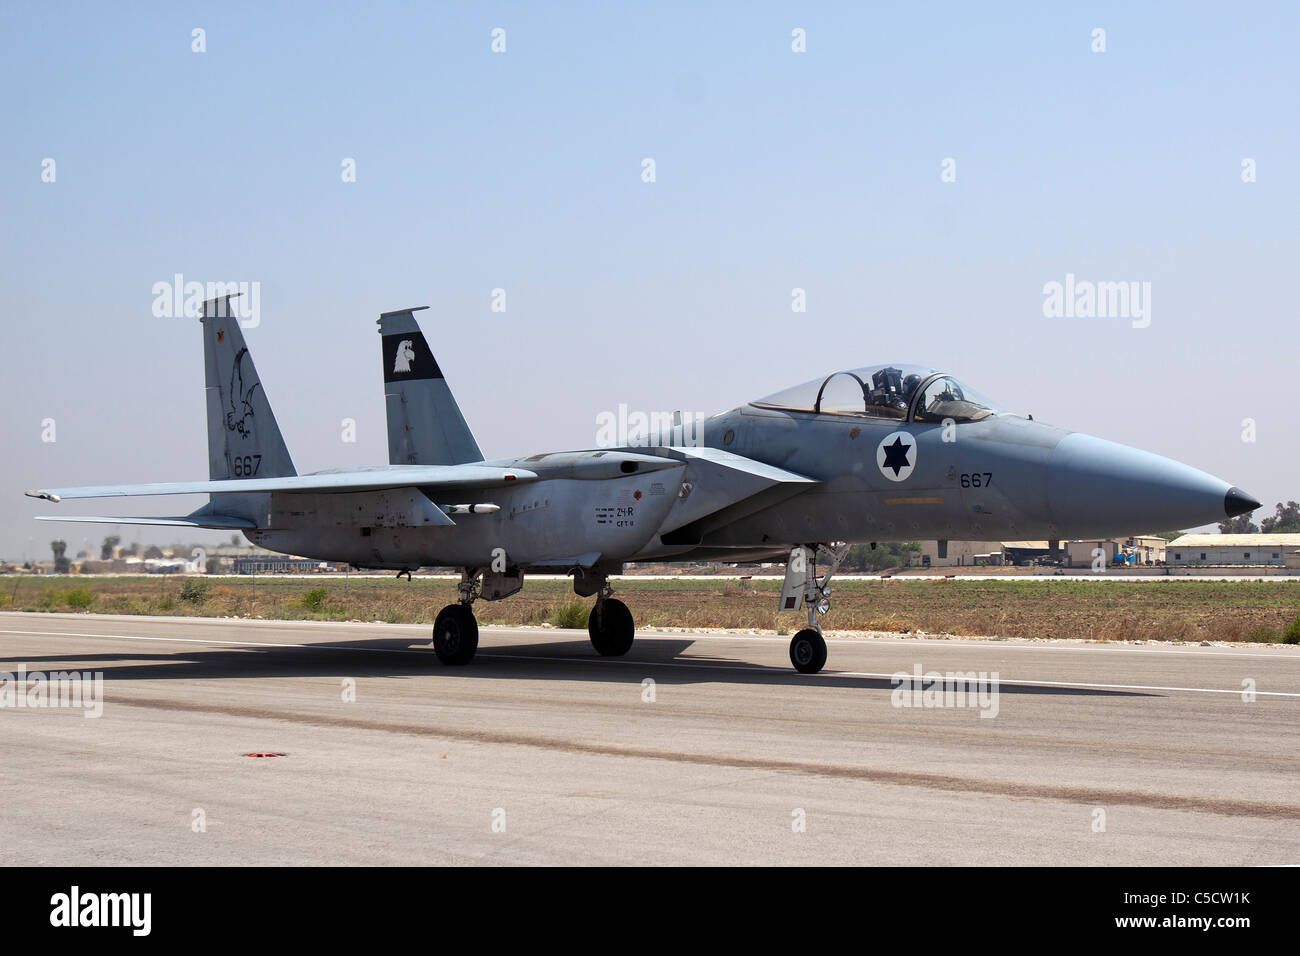 La fuerza aérea israelí de aviones de combate F-15C en el suelo Foto de stock